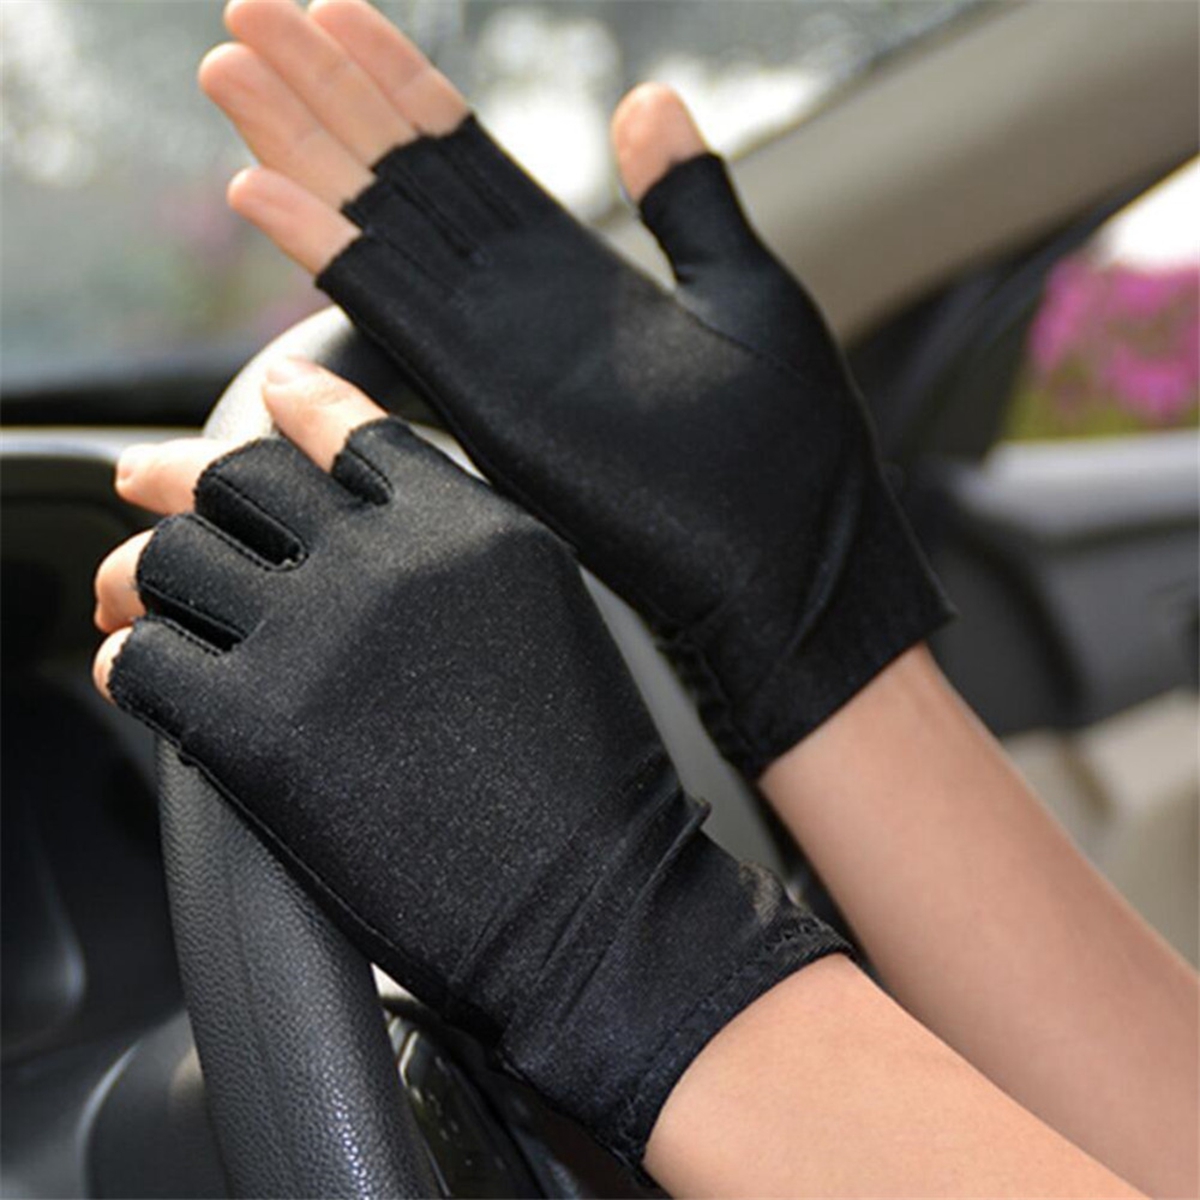 6PAIR воздухопроницаемые весенние осени тонкие короткие половины перчатки мужчины/женщины.